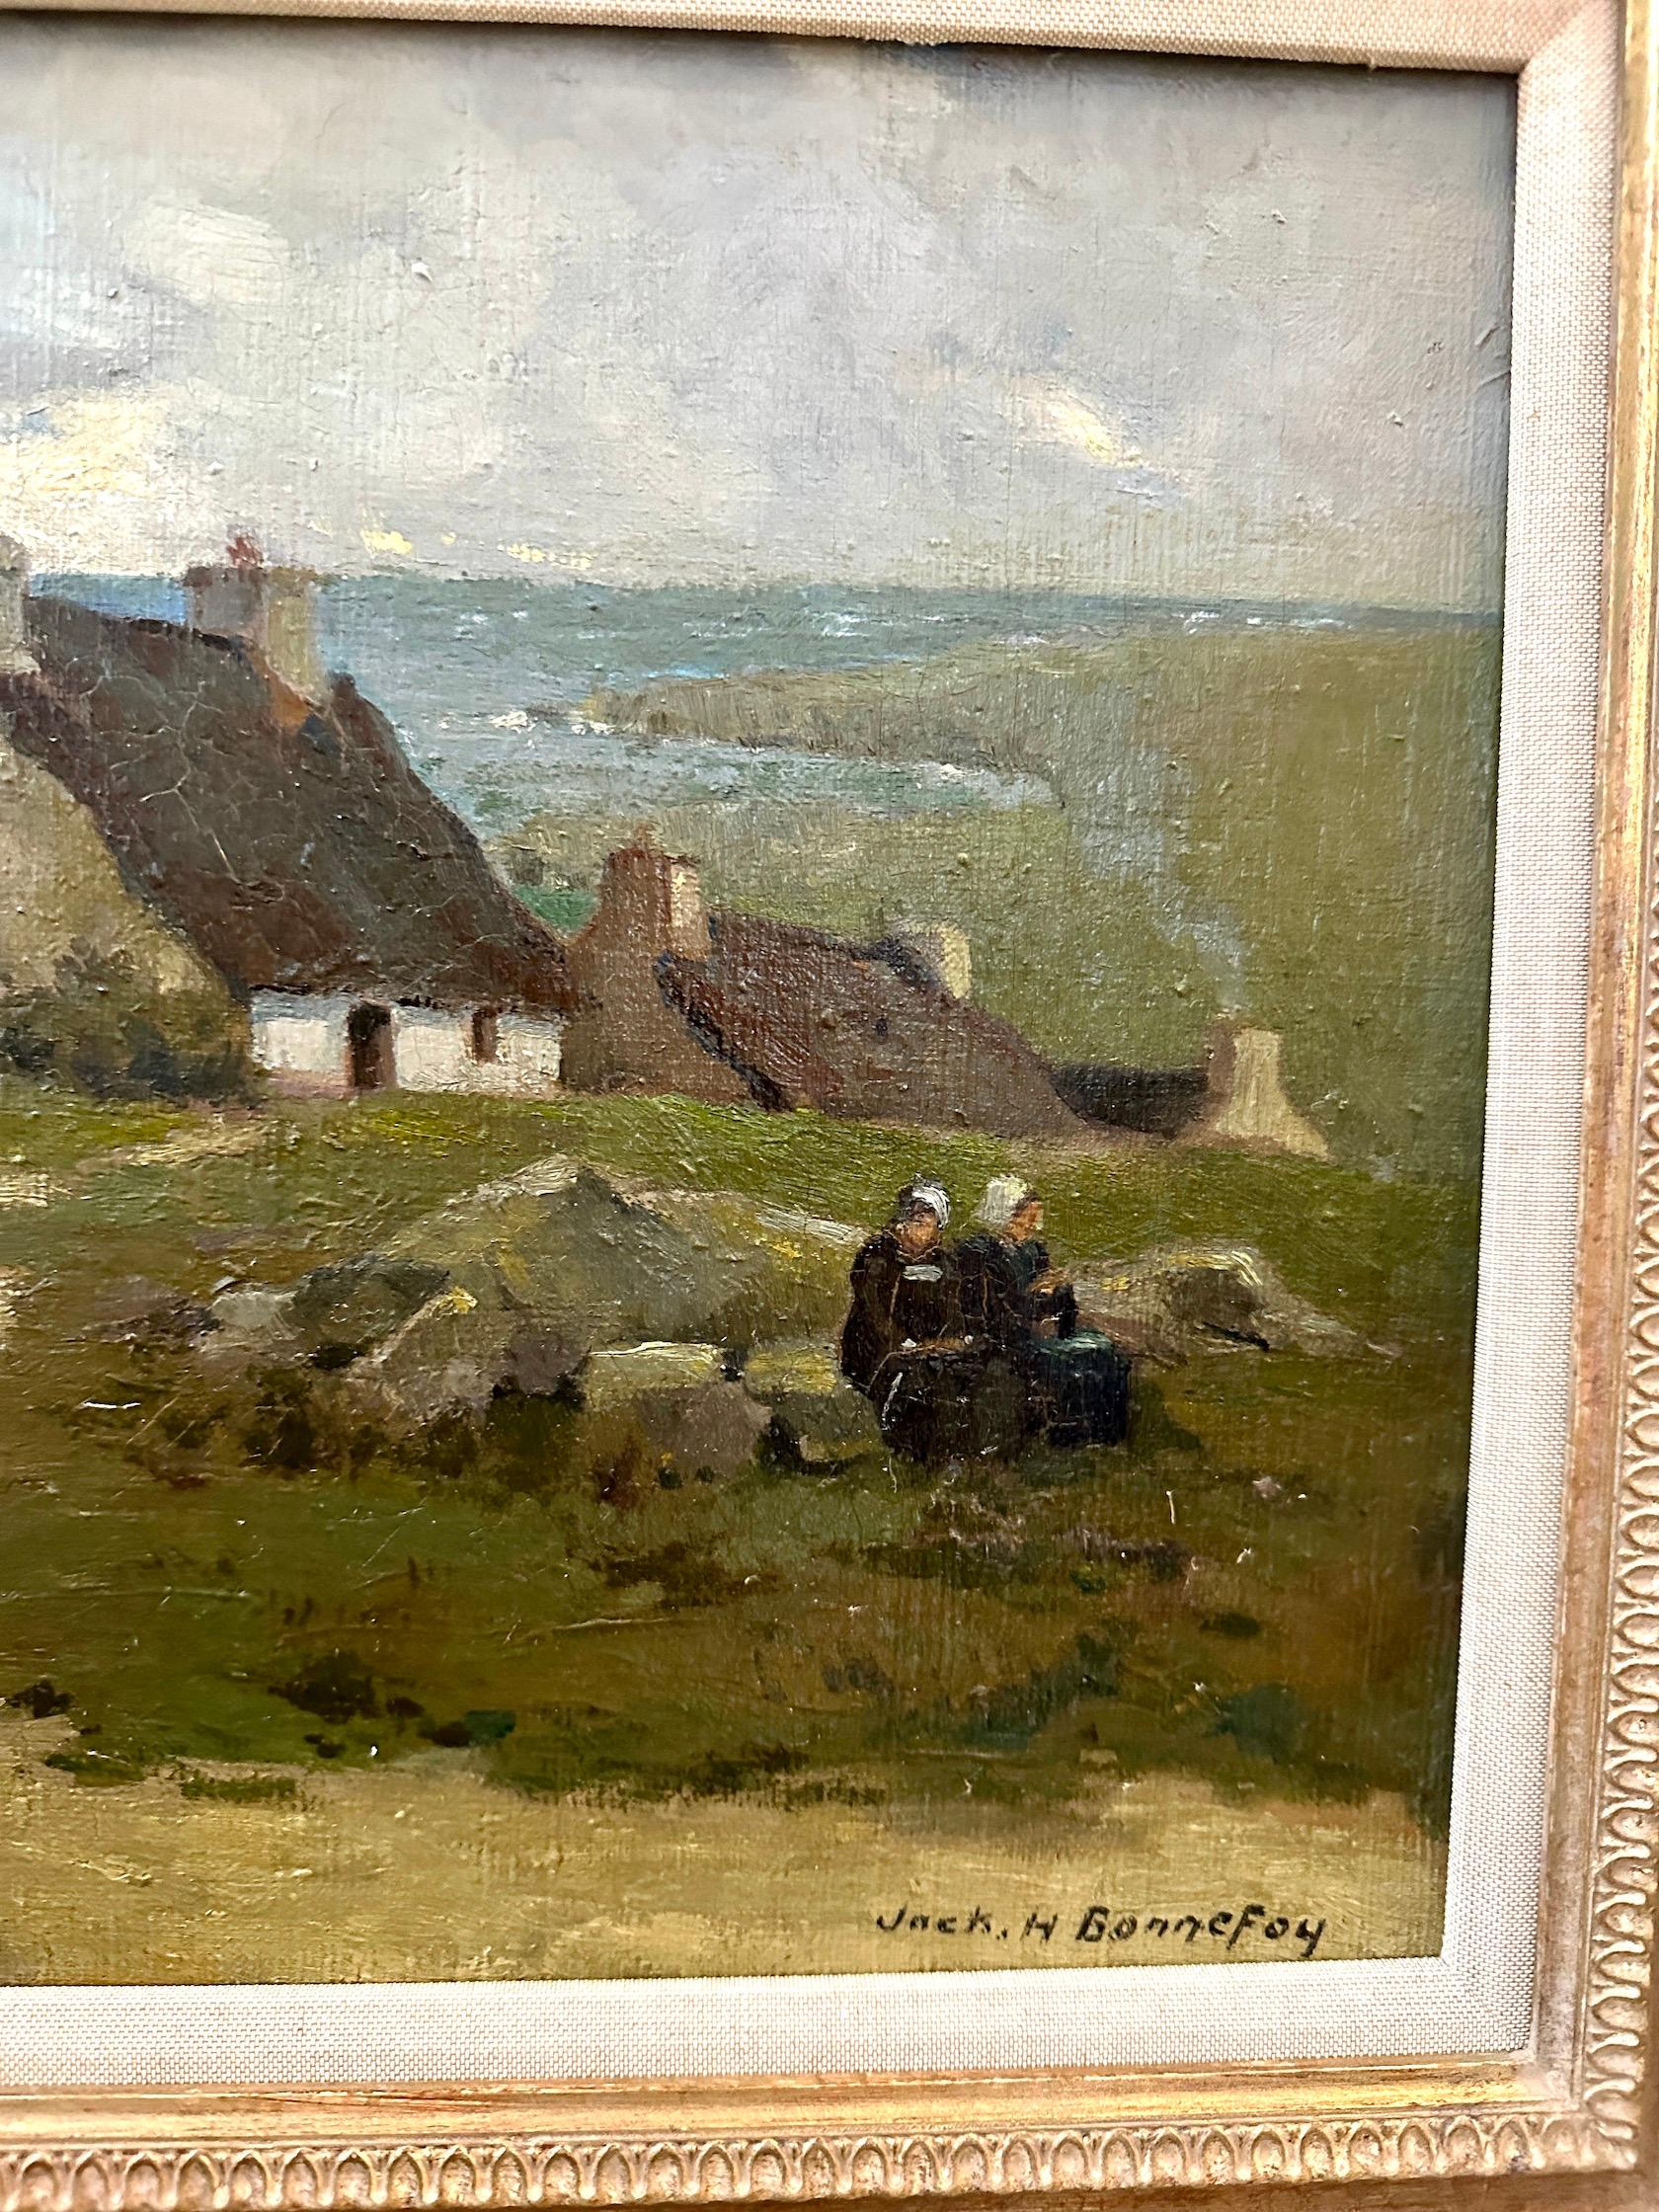 Jack Hubert Bonnefoy war ein englischer Maler, der vom Ende des 19. bis zum Anfang des 20. Jahrhunderts in Frankreich tätig war.

Er arbeitete und reiste durch ganz Europa und Großbritannien und malte die wunderbarsten Landschaften, Hafenszenen und